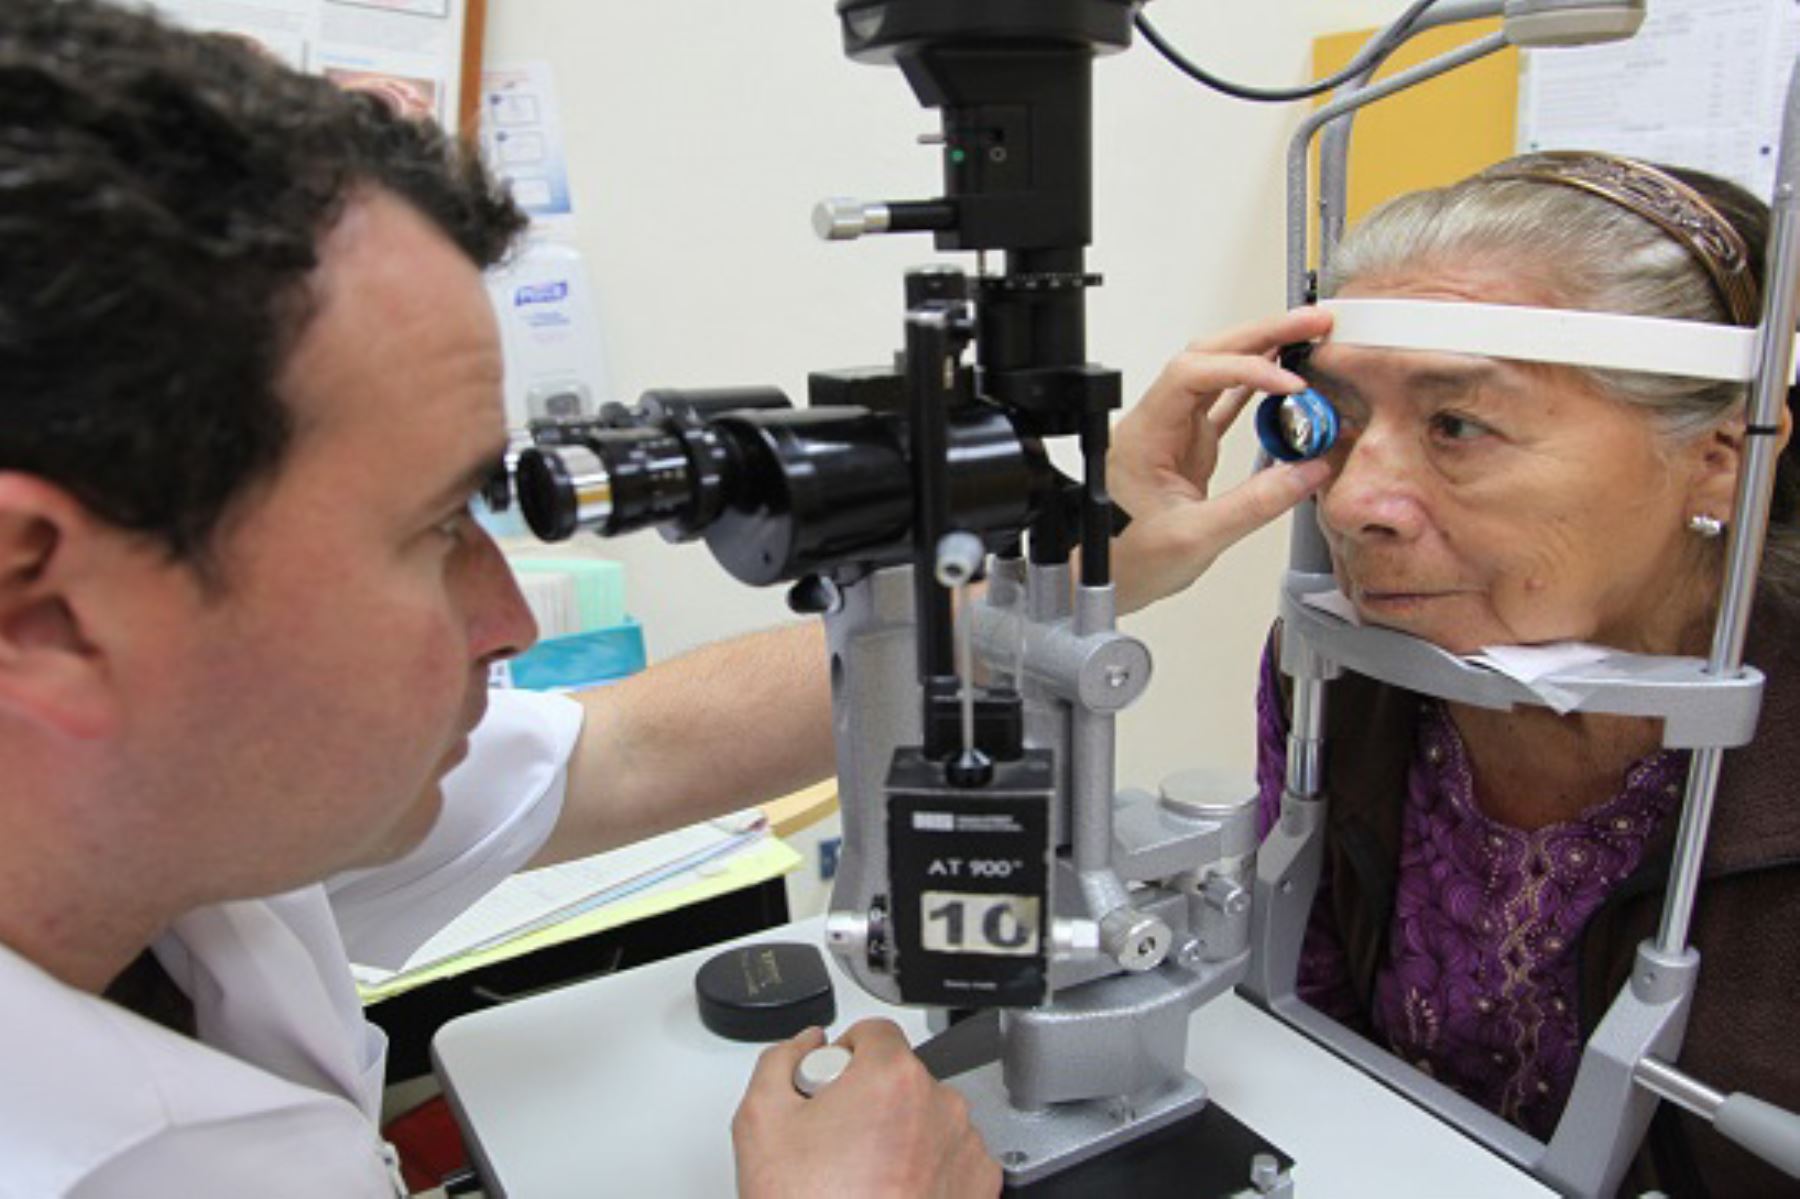 Aprende uso correcto de lentes de contacto y evita daños a tus ojos